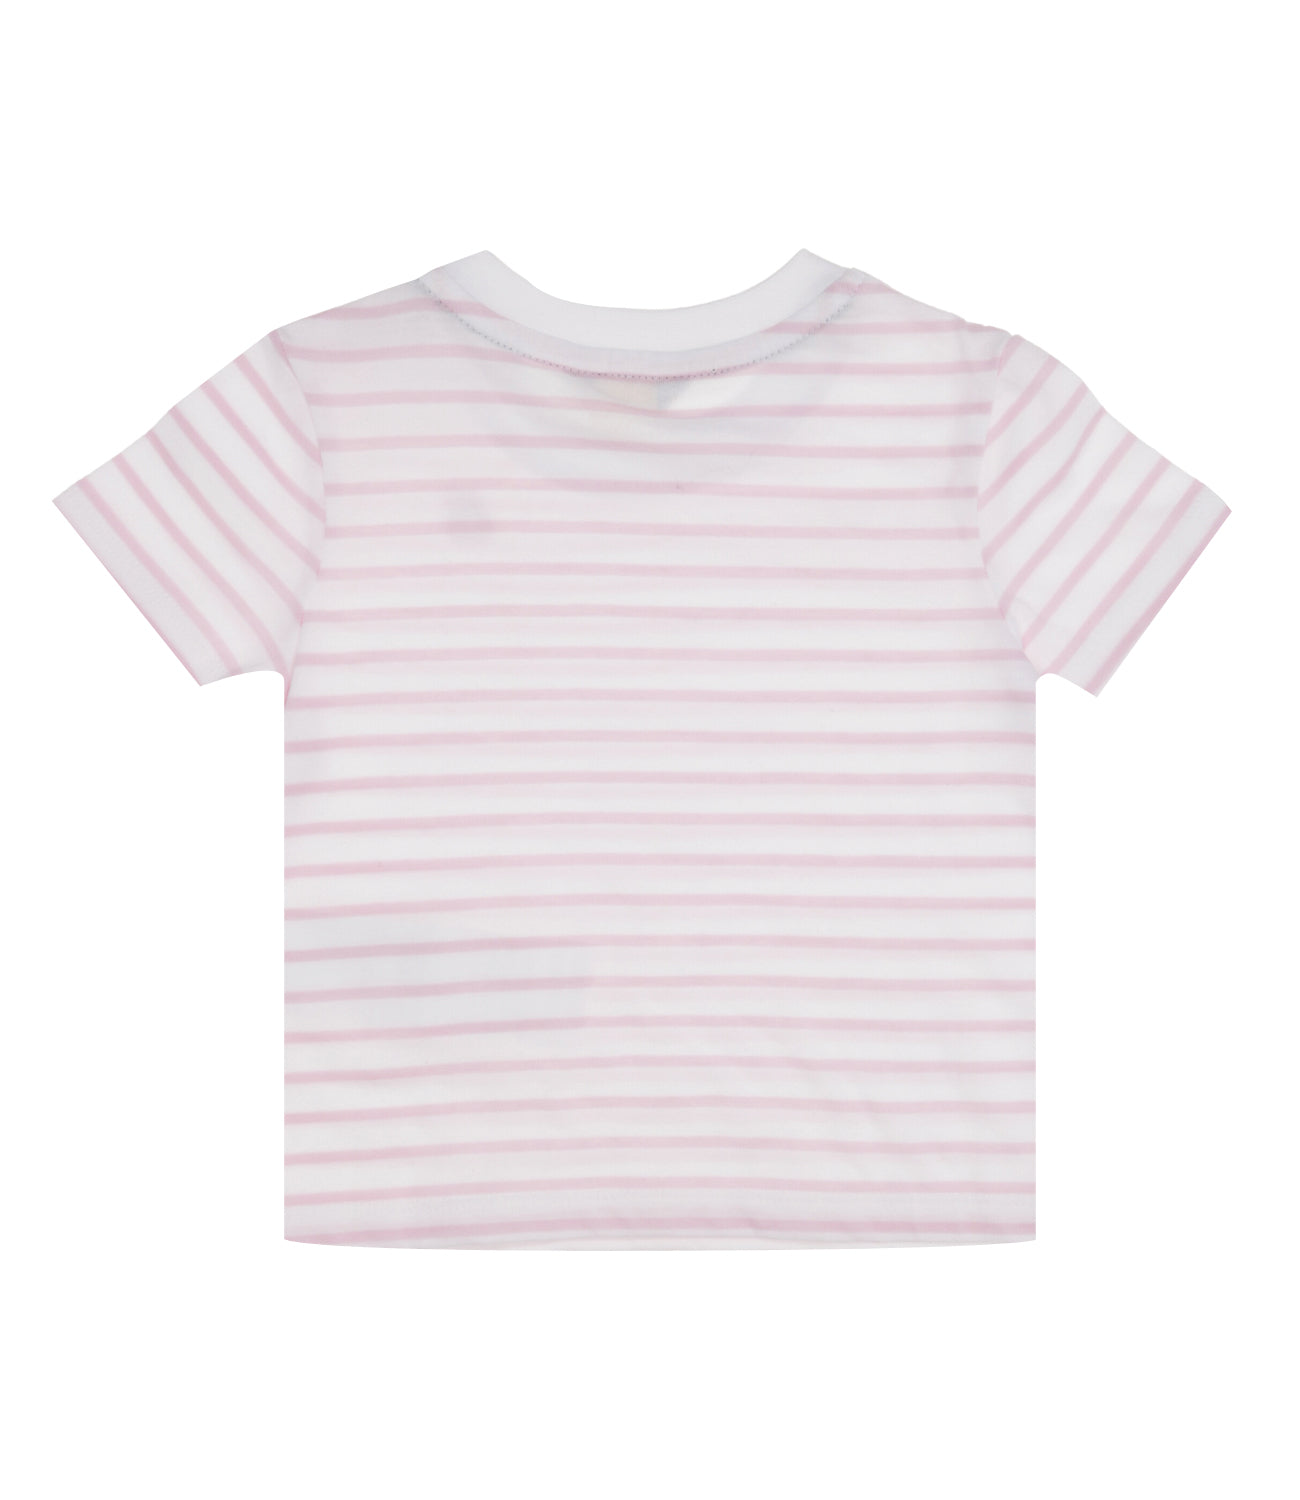 K-Way Kids | T-Shirt E. Pete Logo Stripes White and Pink